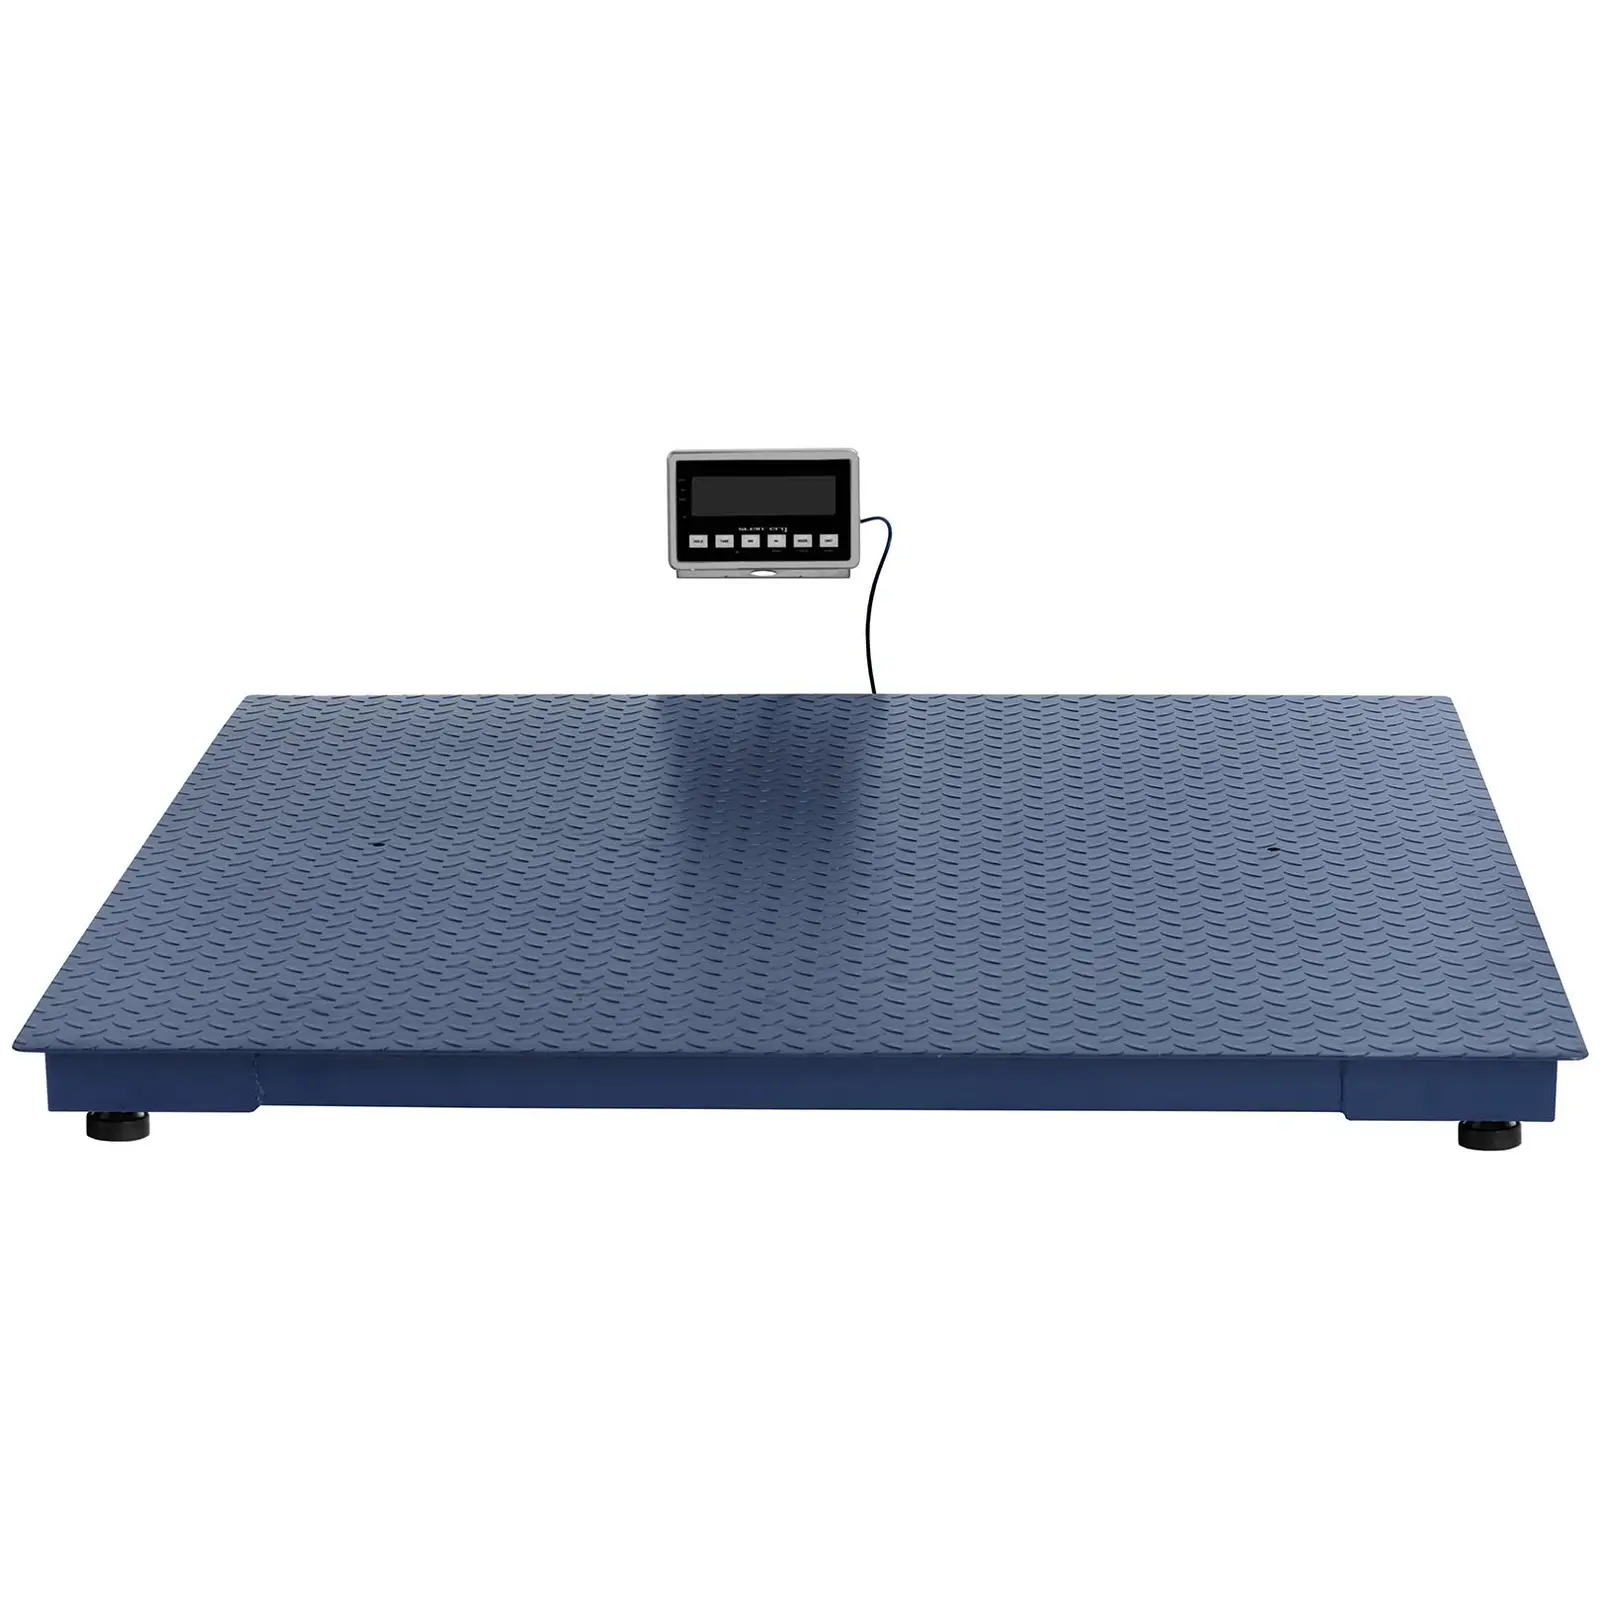 Balança de plataforma - 5000 kg / 2 kg - 1500 x 1500 mm - 2